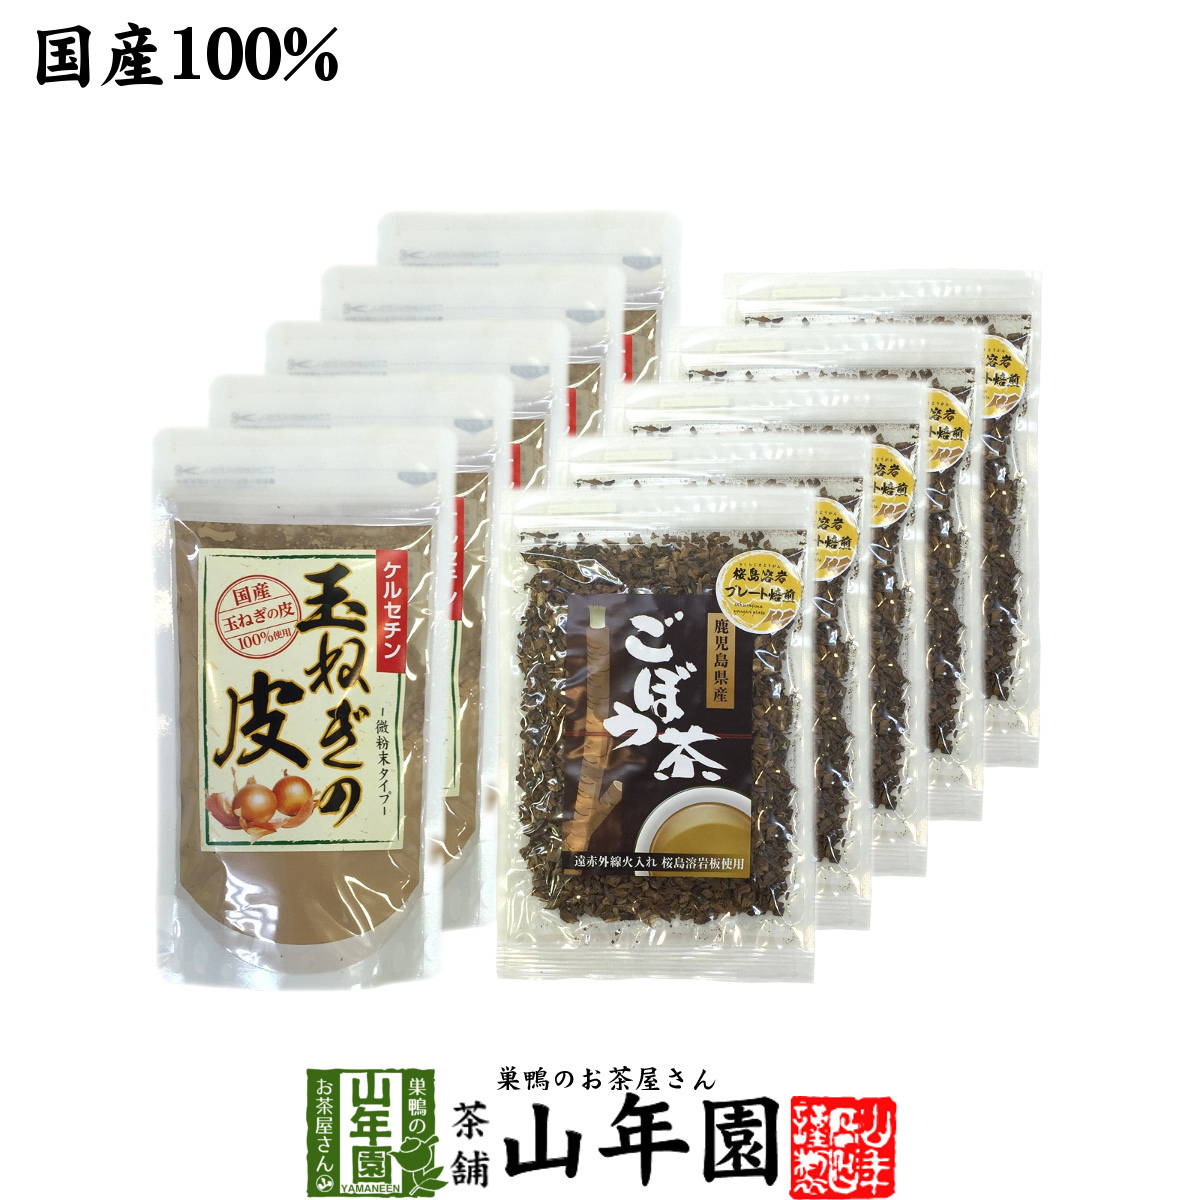 健康茶 玉ねぎの皮とごぼう茶セット 10袋セット(500g+350g) 国産 送料無料